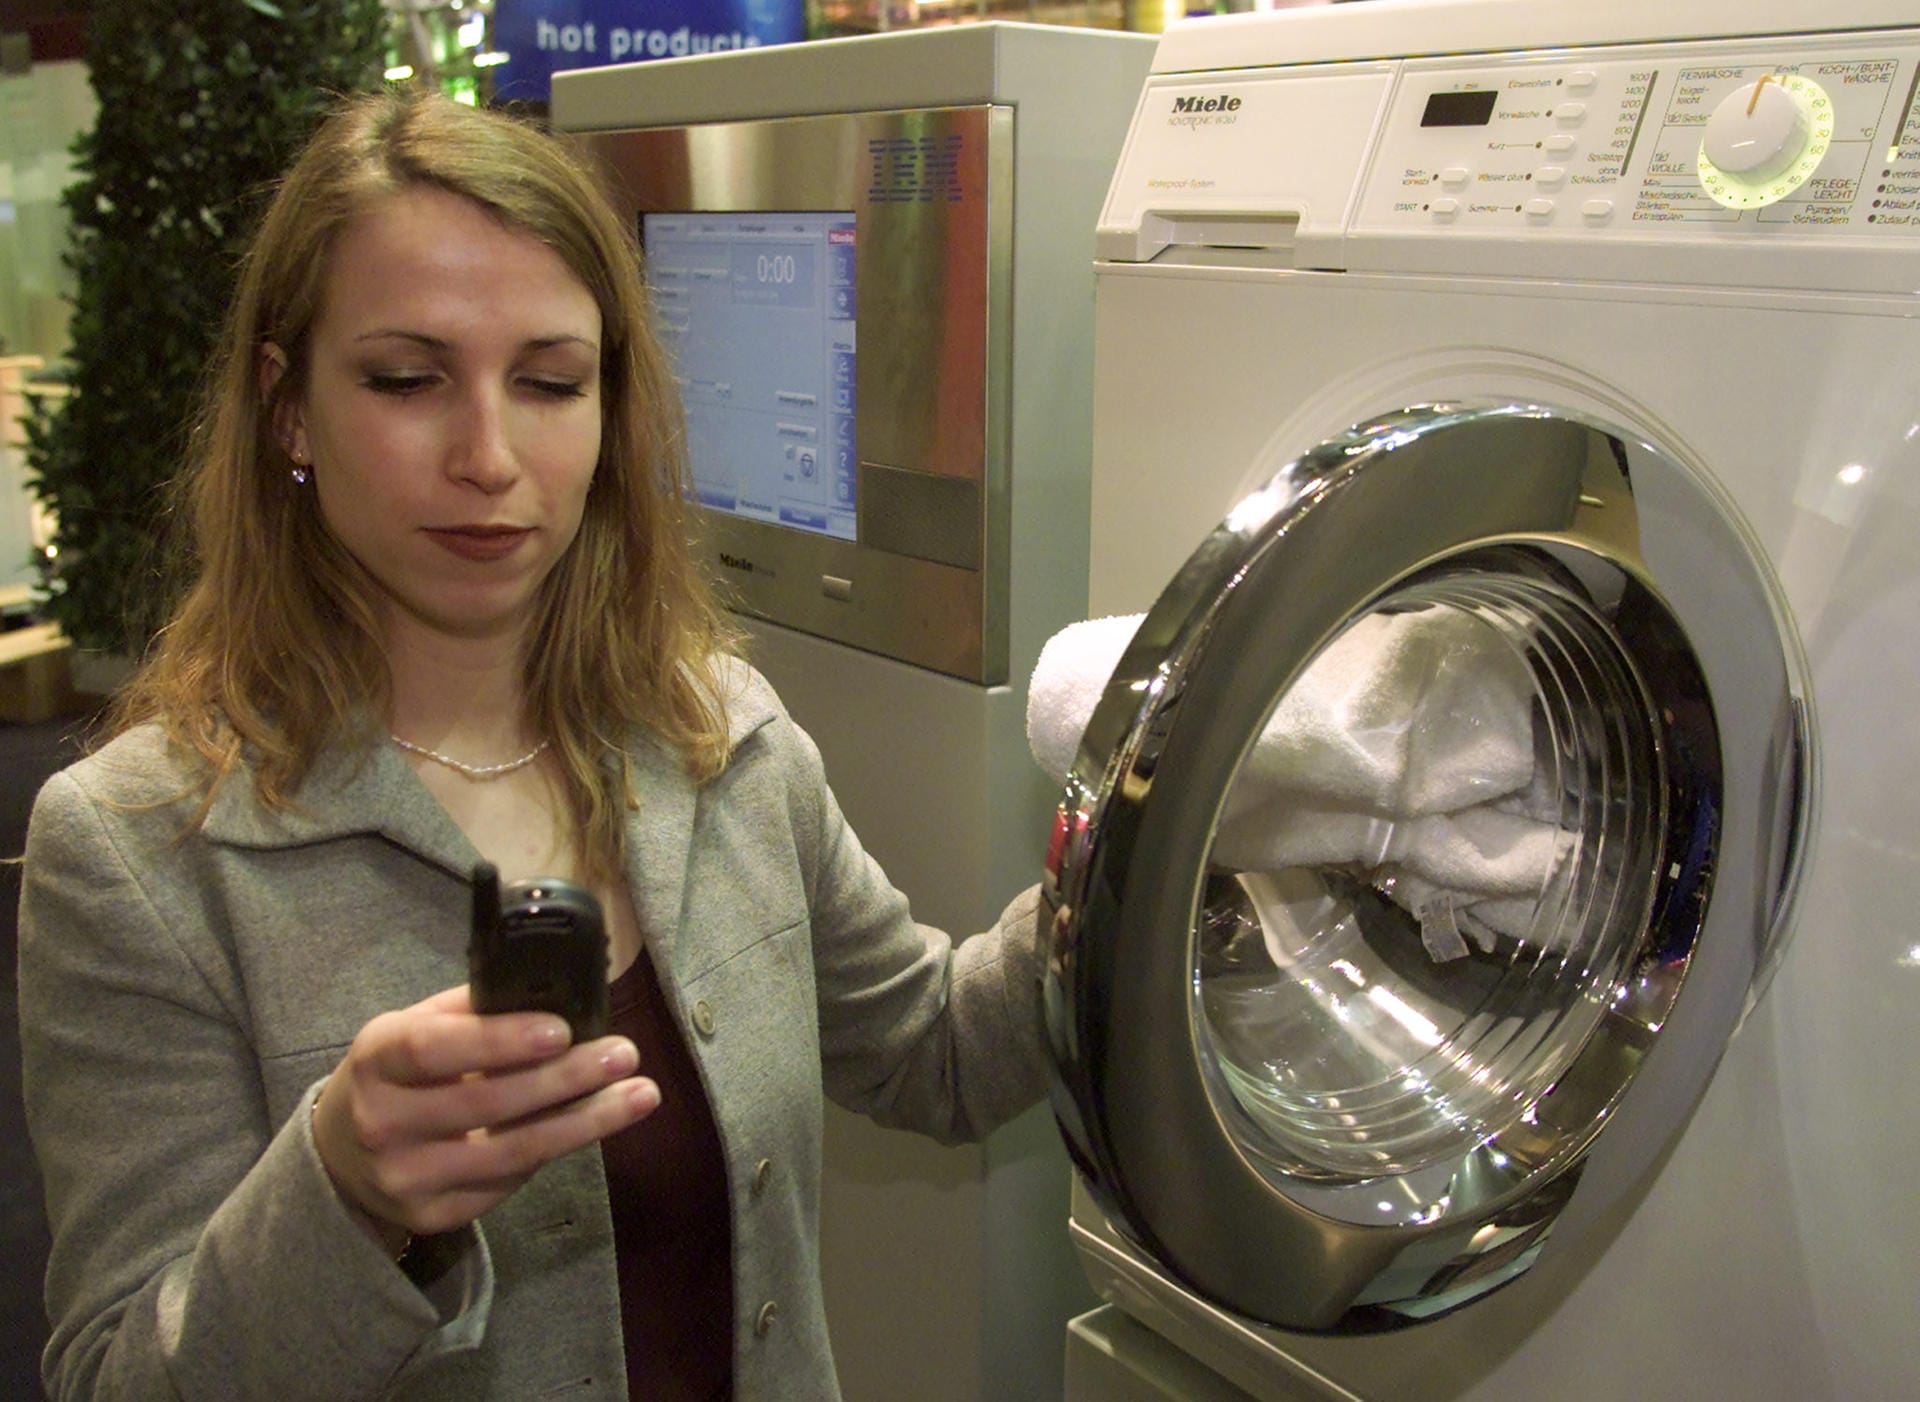 Cebit 2001: Eine Frau präsentiert eine intelligente Waschmaschine von Miele. Die Maschine ist mit dem Internet verbunden und schickt beispielsweise eine SMS, wenn sie repariert werden muss.